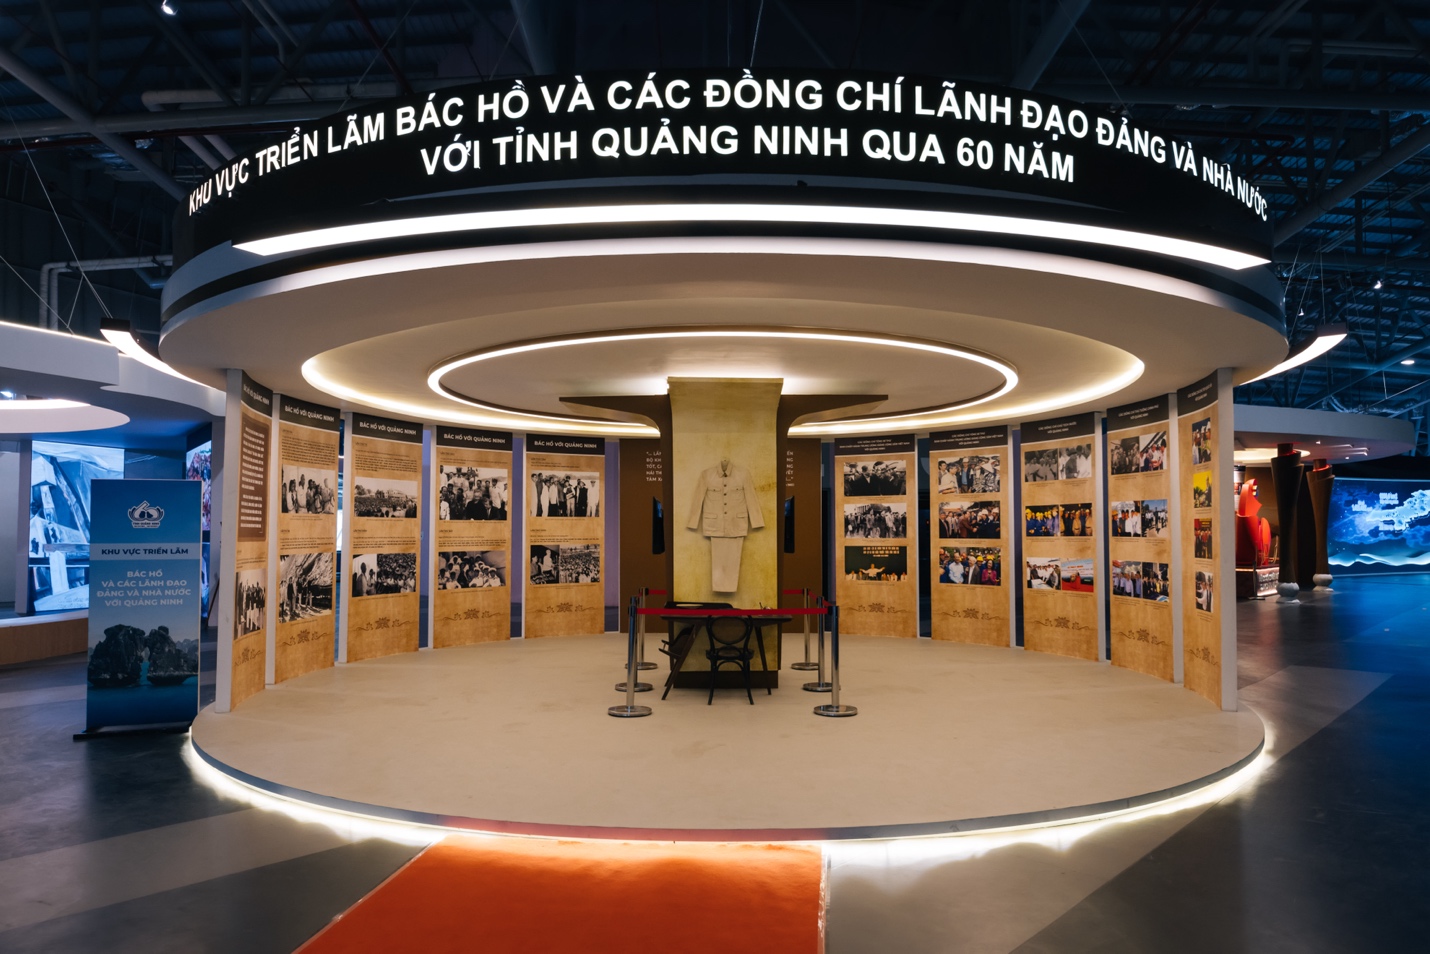 Công nghệ mới khiến cho triển lãm 60 năm tỉnh Quảng Ninh trở nên sống động và thú vị - Ảnh 2.